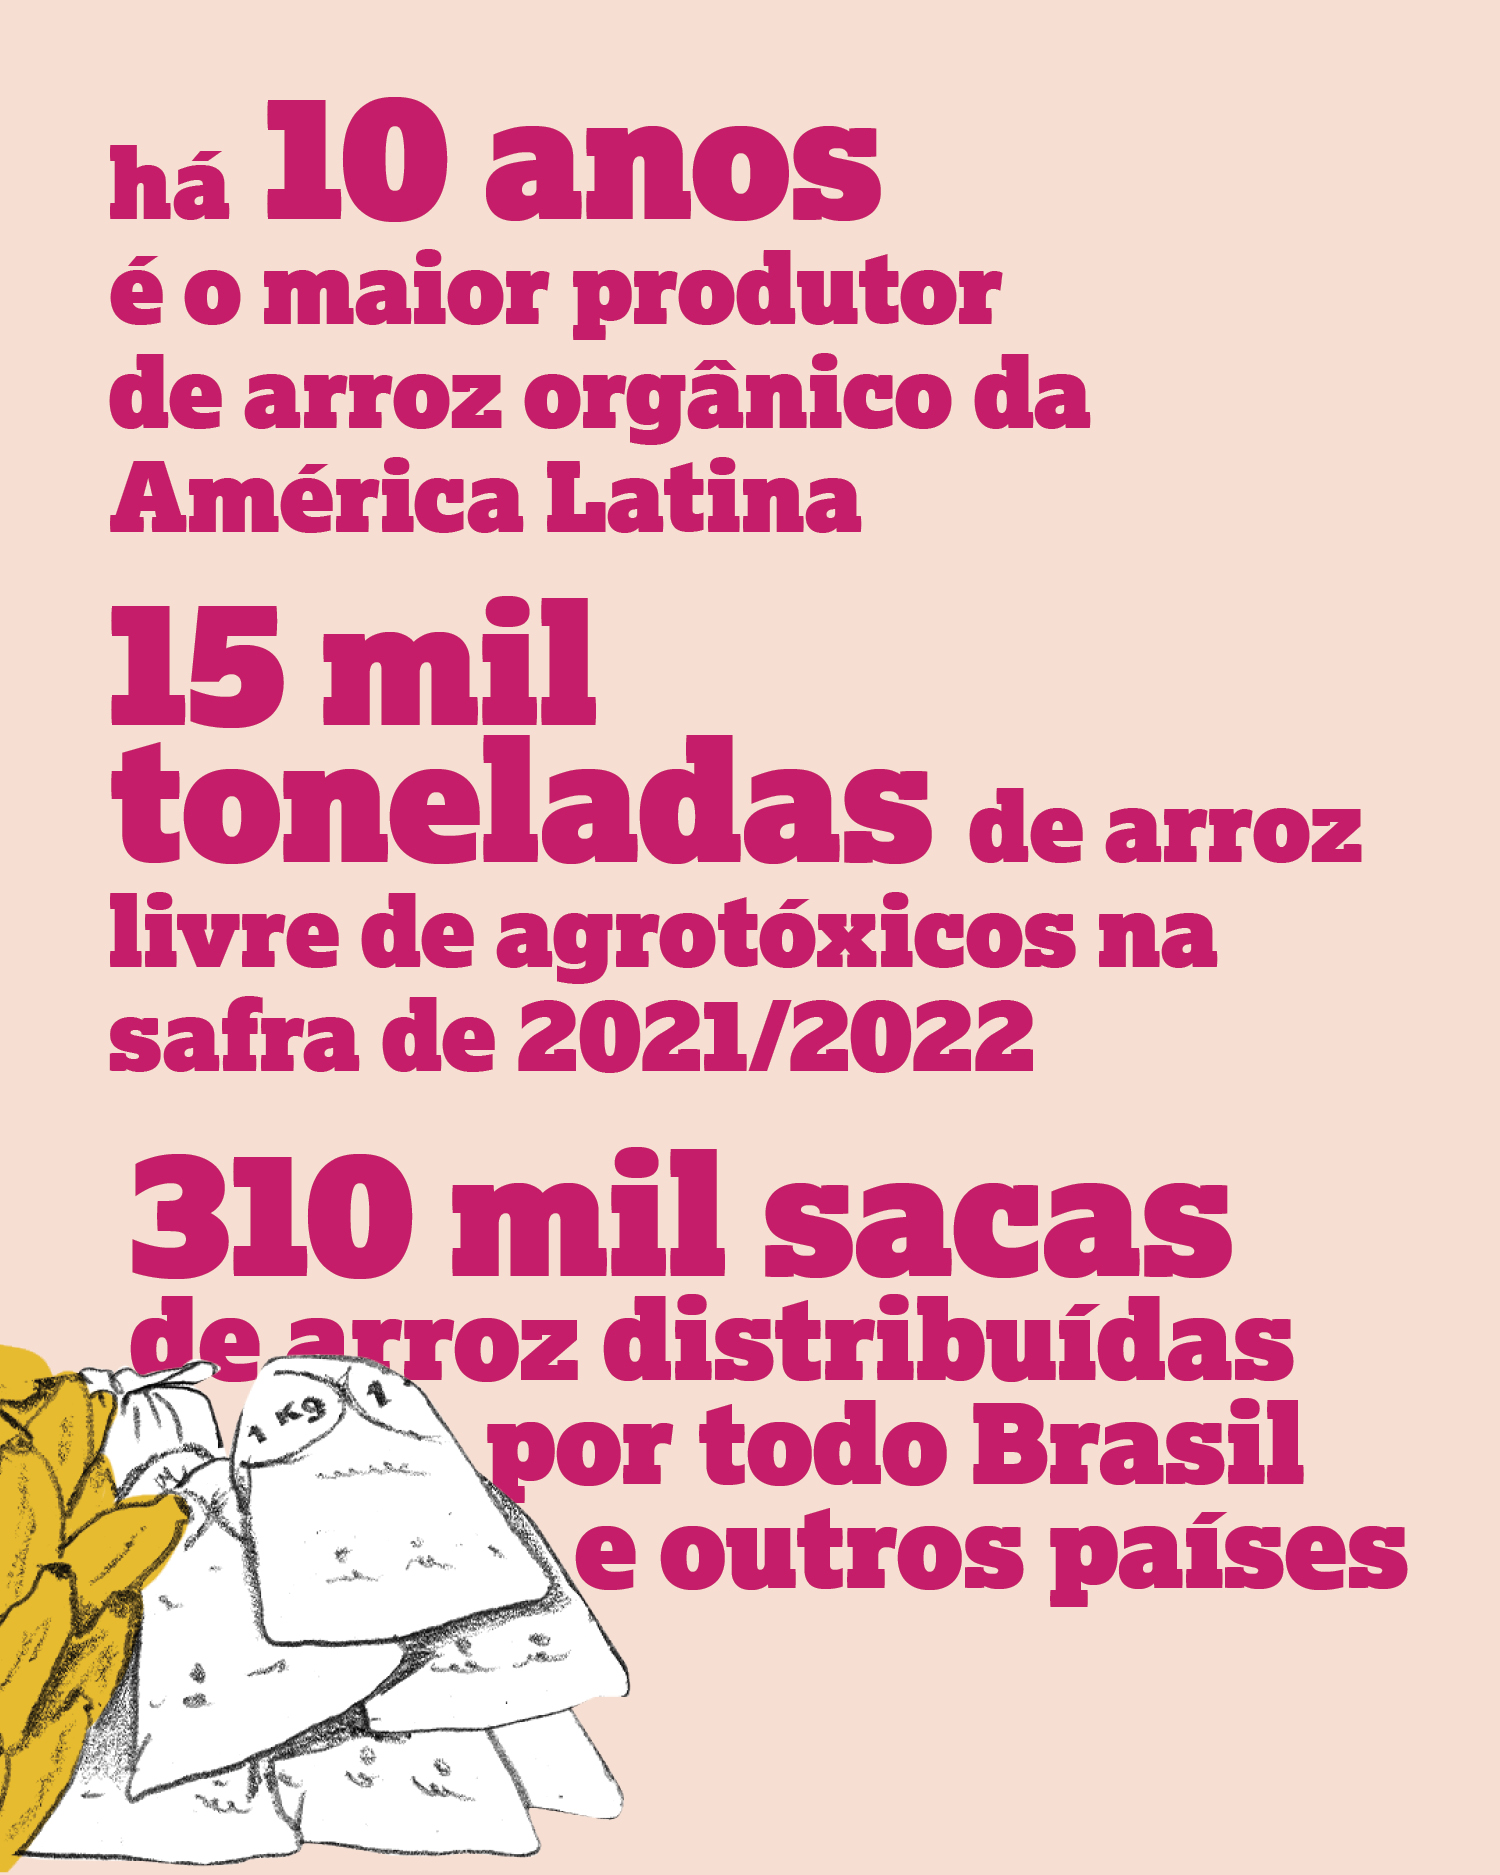 há 10 anos é o maior produtor de arroz orgânico da América Latina 15 mil toneladas de arroz livre de agrotóxicos na safra de 2021/2022 310 mil sacas de arroz distribuídas por todo Brasil e outros países